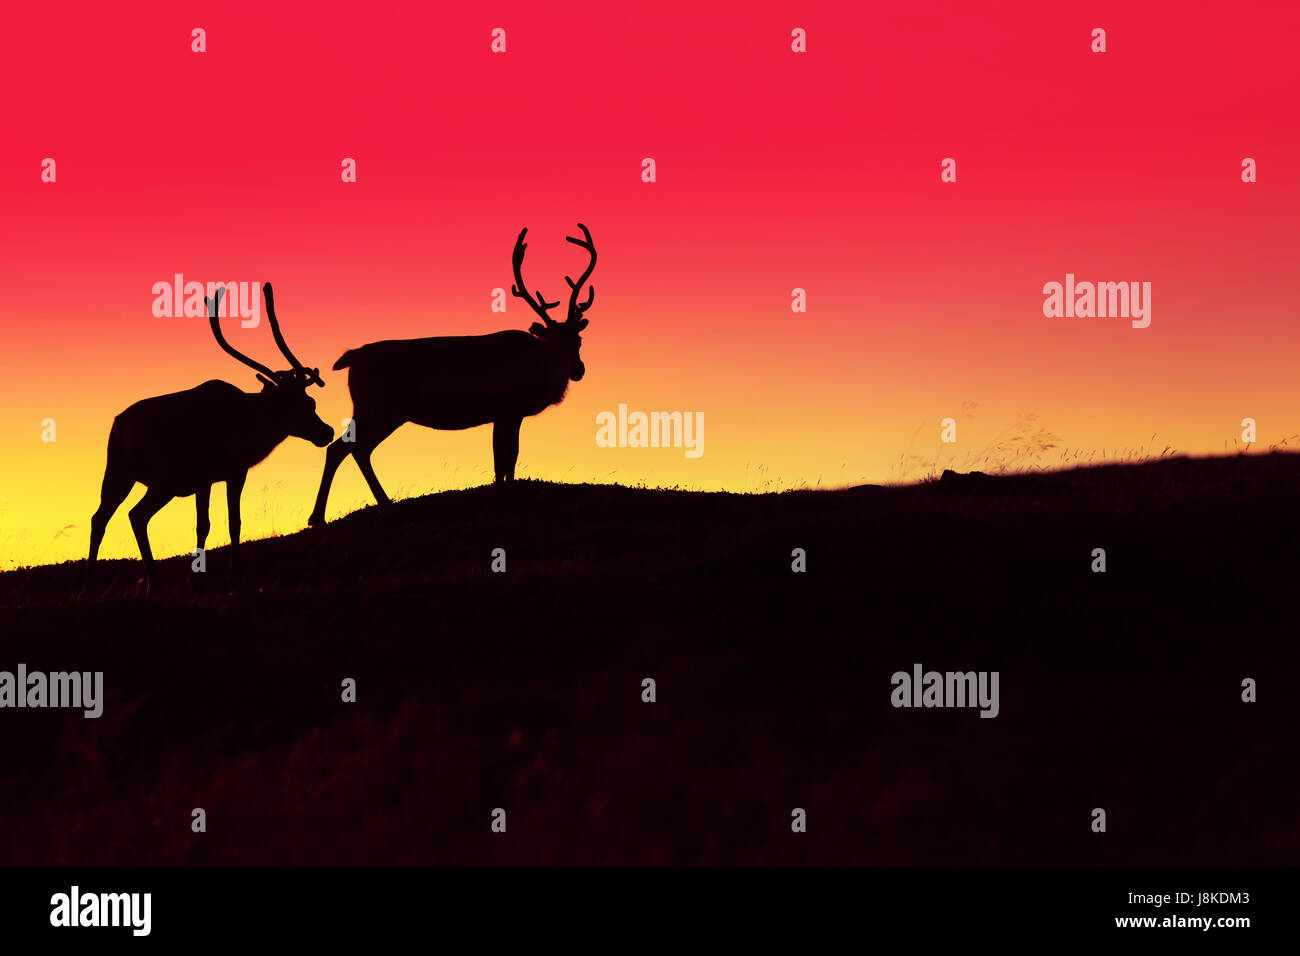 Silueta de dos ciervos contra quemado sunset sky en la oscuridad Foto de stock